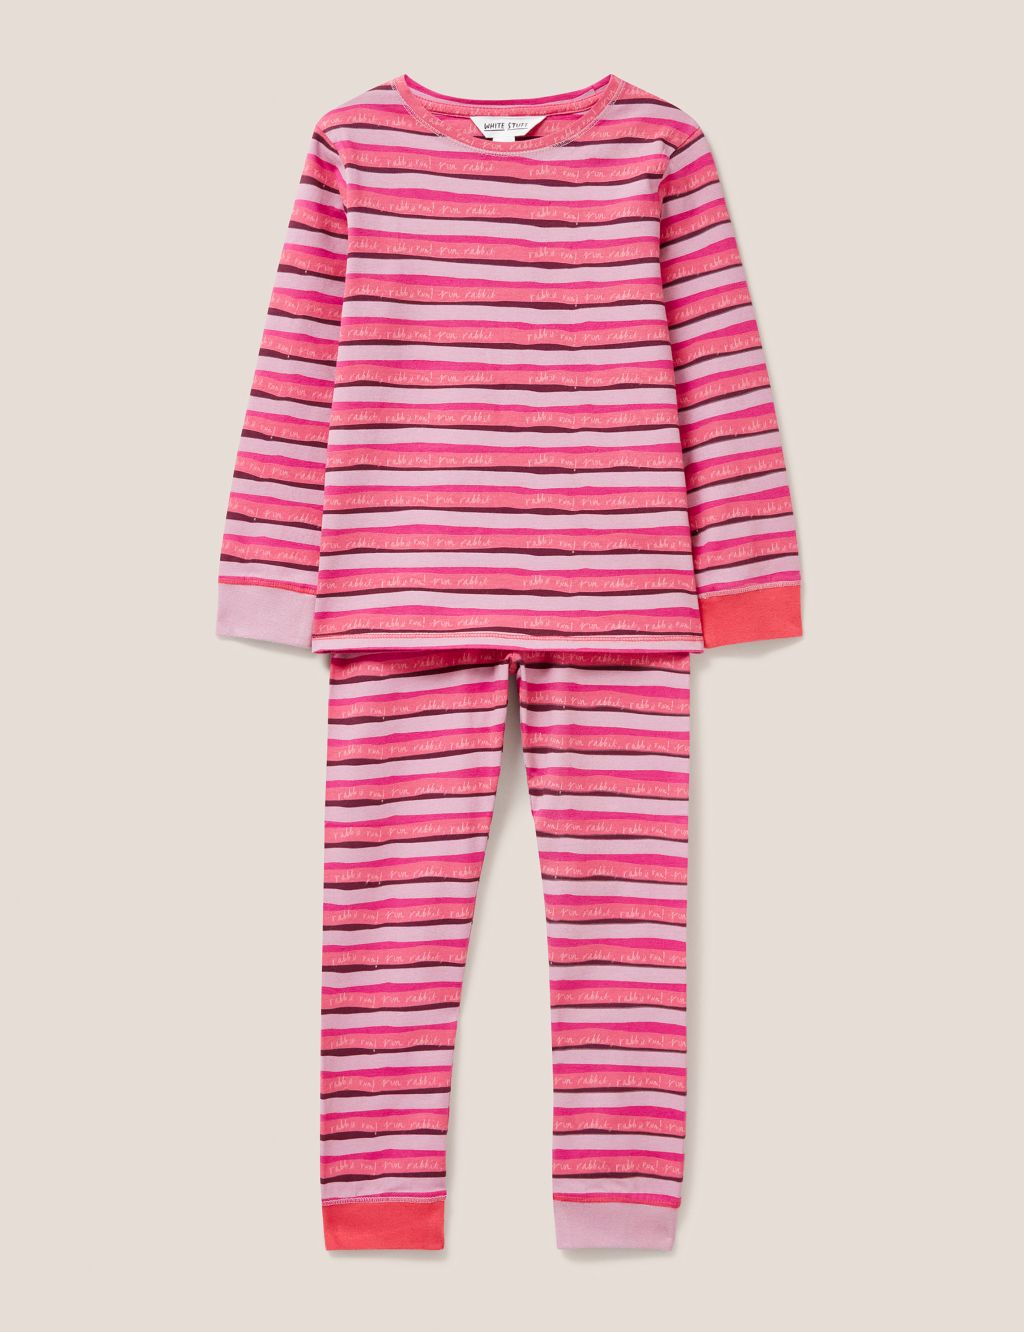 Cotton Rich Striped Pyjamas (3-10 Yrs) image 1